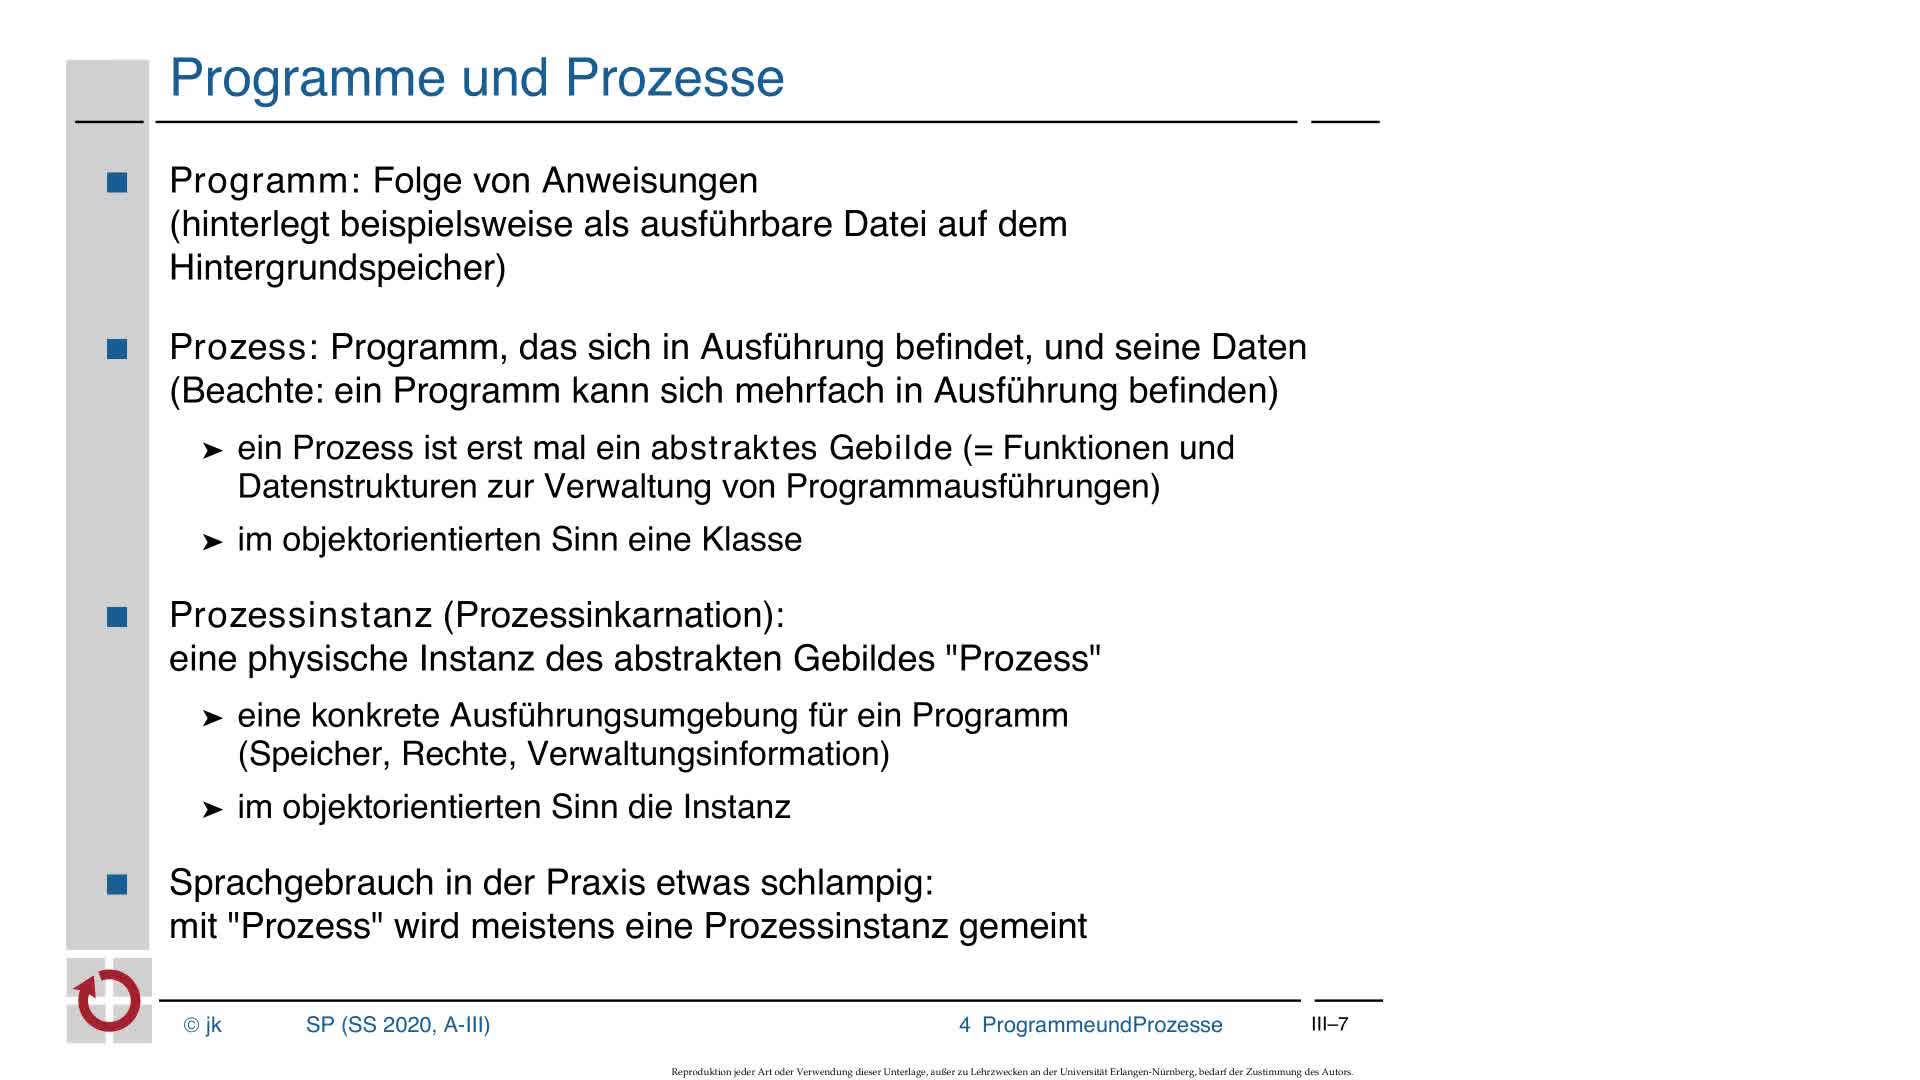 3.2 Ausführung von Programmen: Programme und Prozesse laden preview image